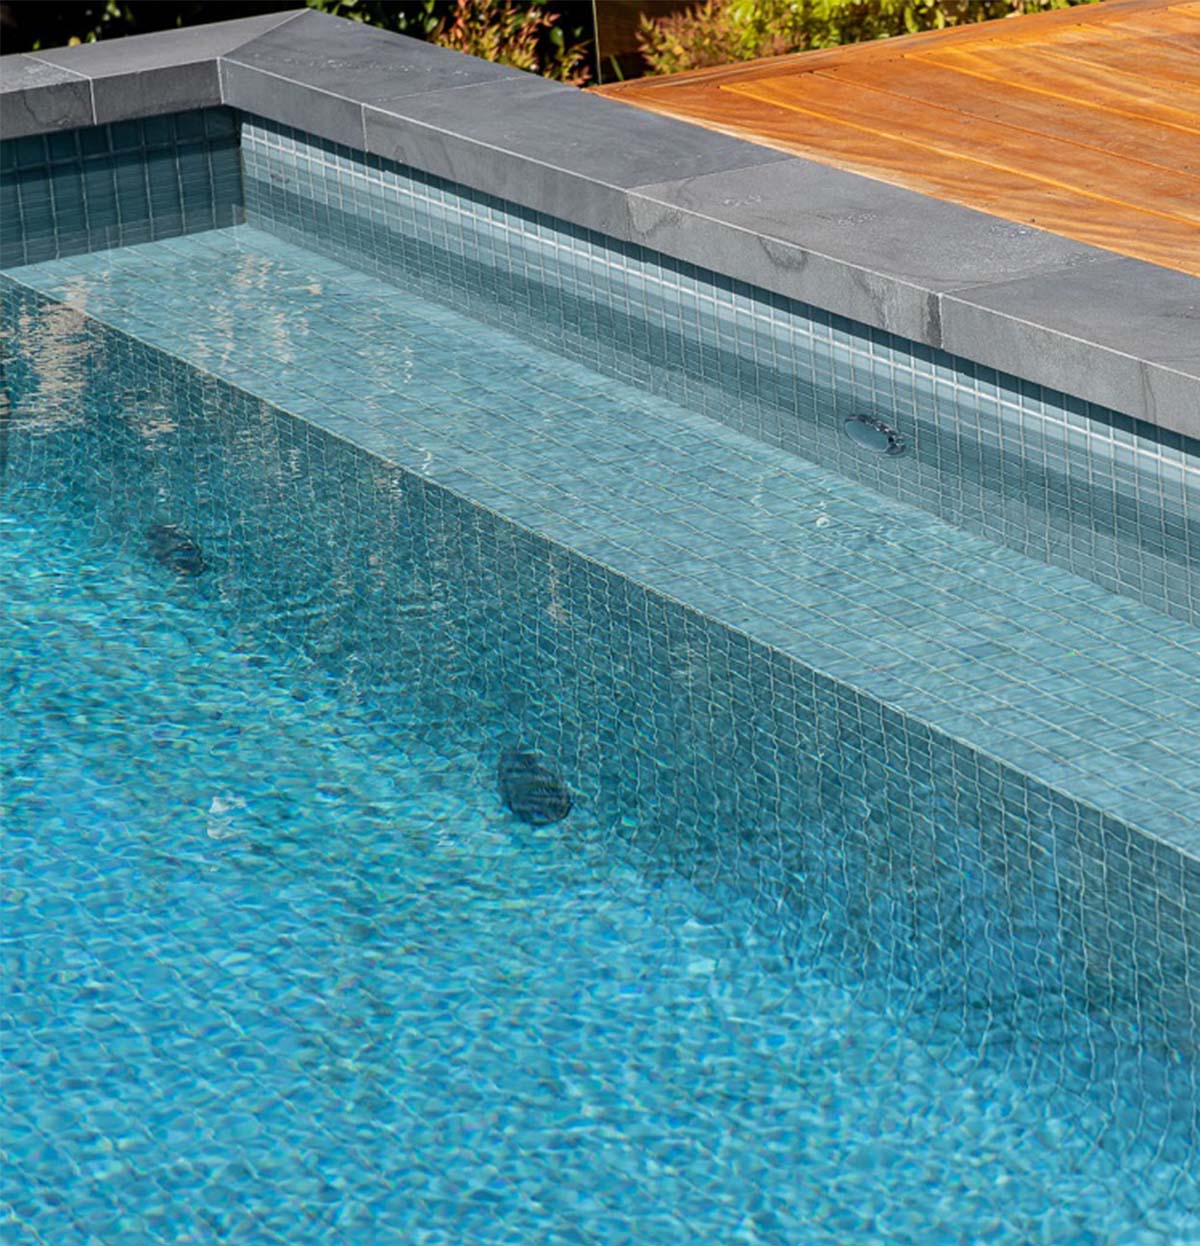 Peppercorn CMC105 fully-tiled pool steps